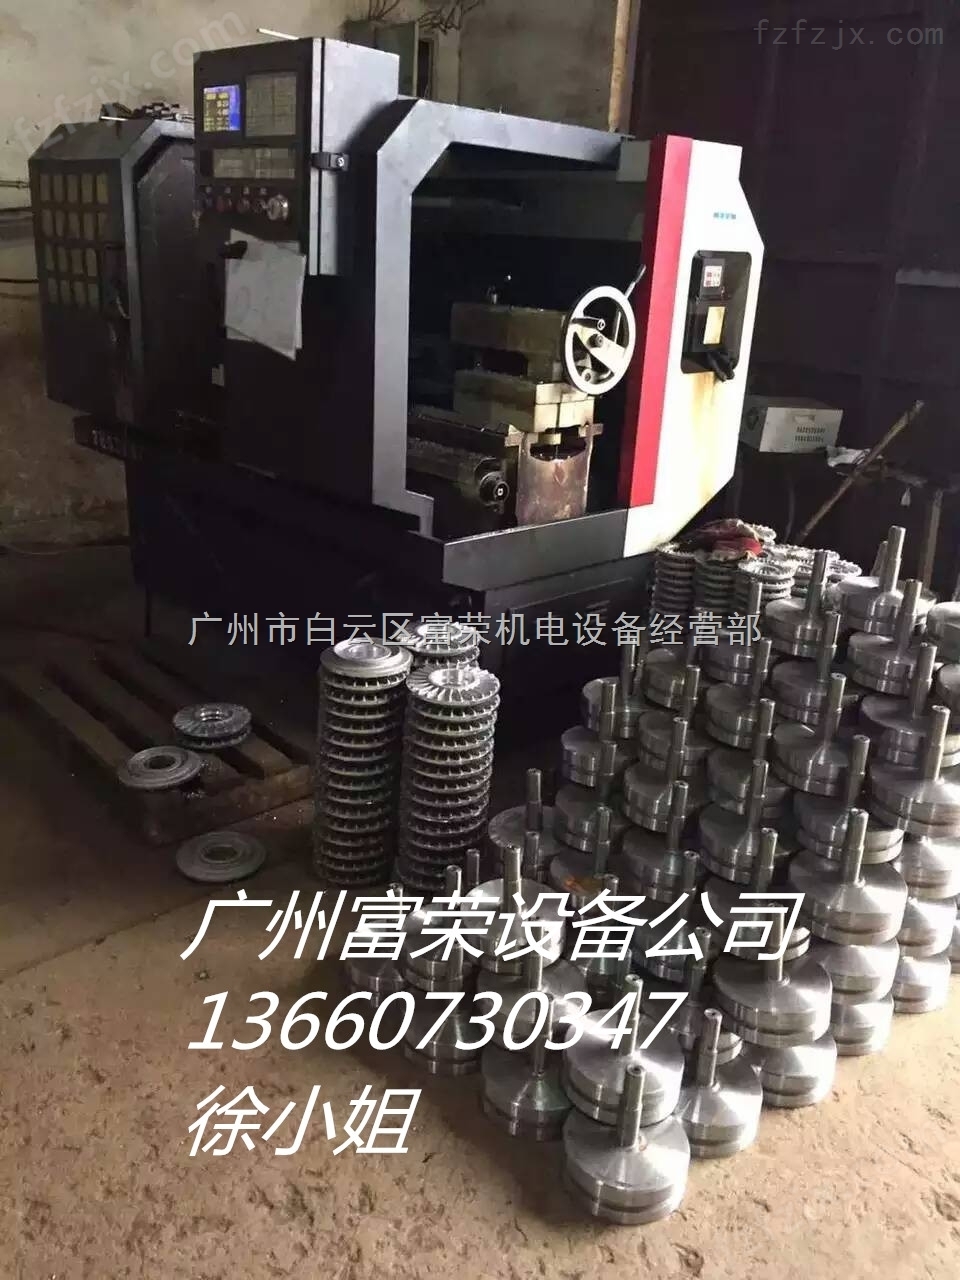 广州磁粉离合器维修